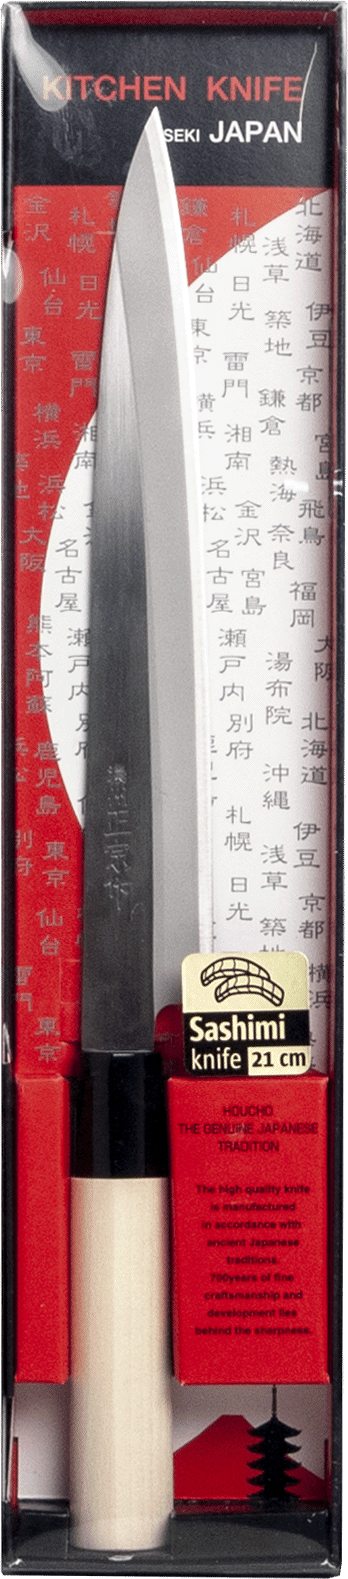 Gyuto knife Japanese knife, Satake 1